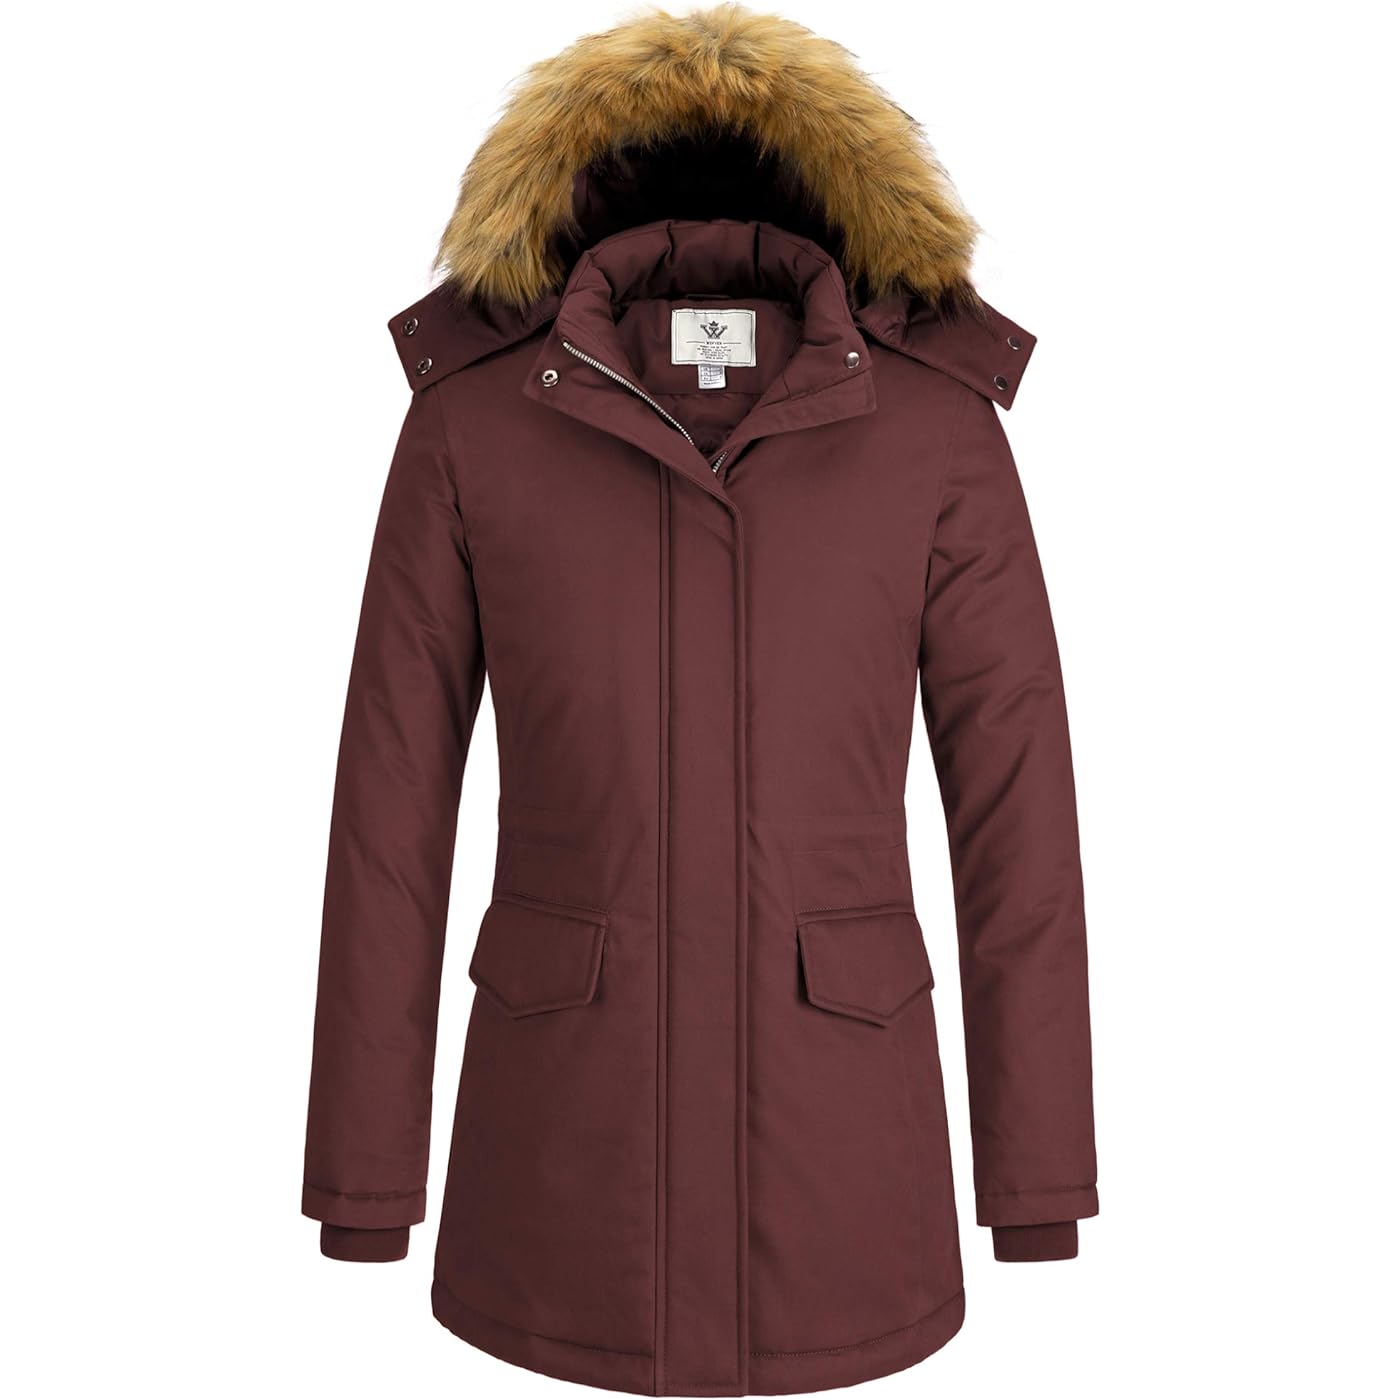 Куртка WenVen Winter Thickened Warm Mid Length Windproof and Waterproof With a Detachable Fur Hat, бордовый женская кожаная куртка средней длины с меховым воротником